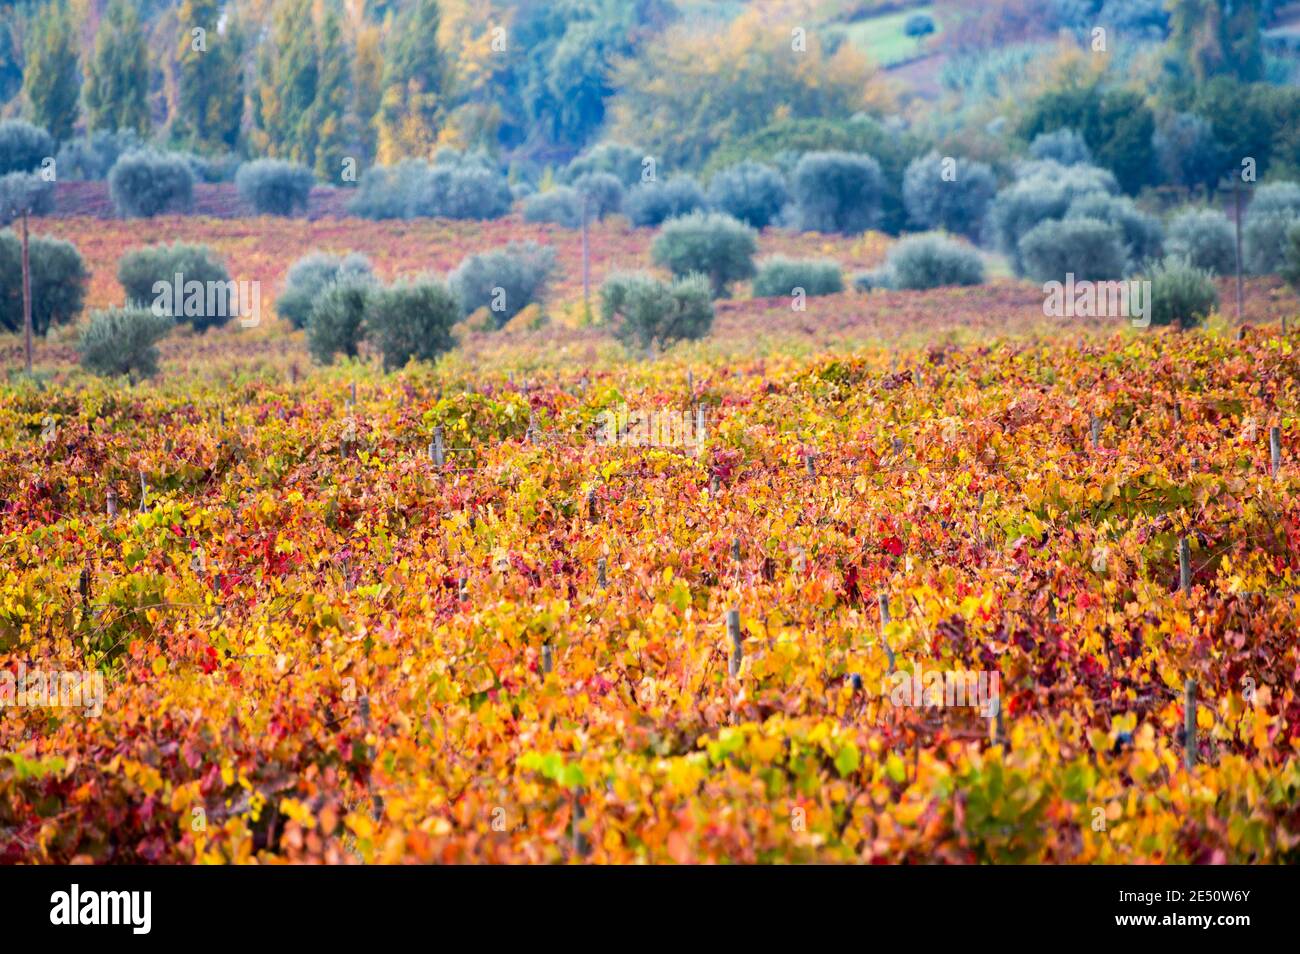 Paysage d'automne coloré de la plus ancienne région viticole du monde dans la vallée du Douro au Portugal, différentes variétés de vignes plantées sur des vignobles en terrasse, pr Banque D'Images